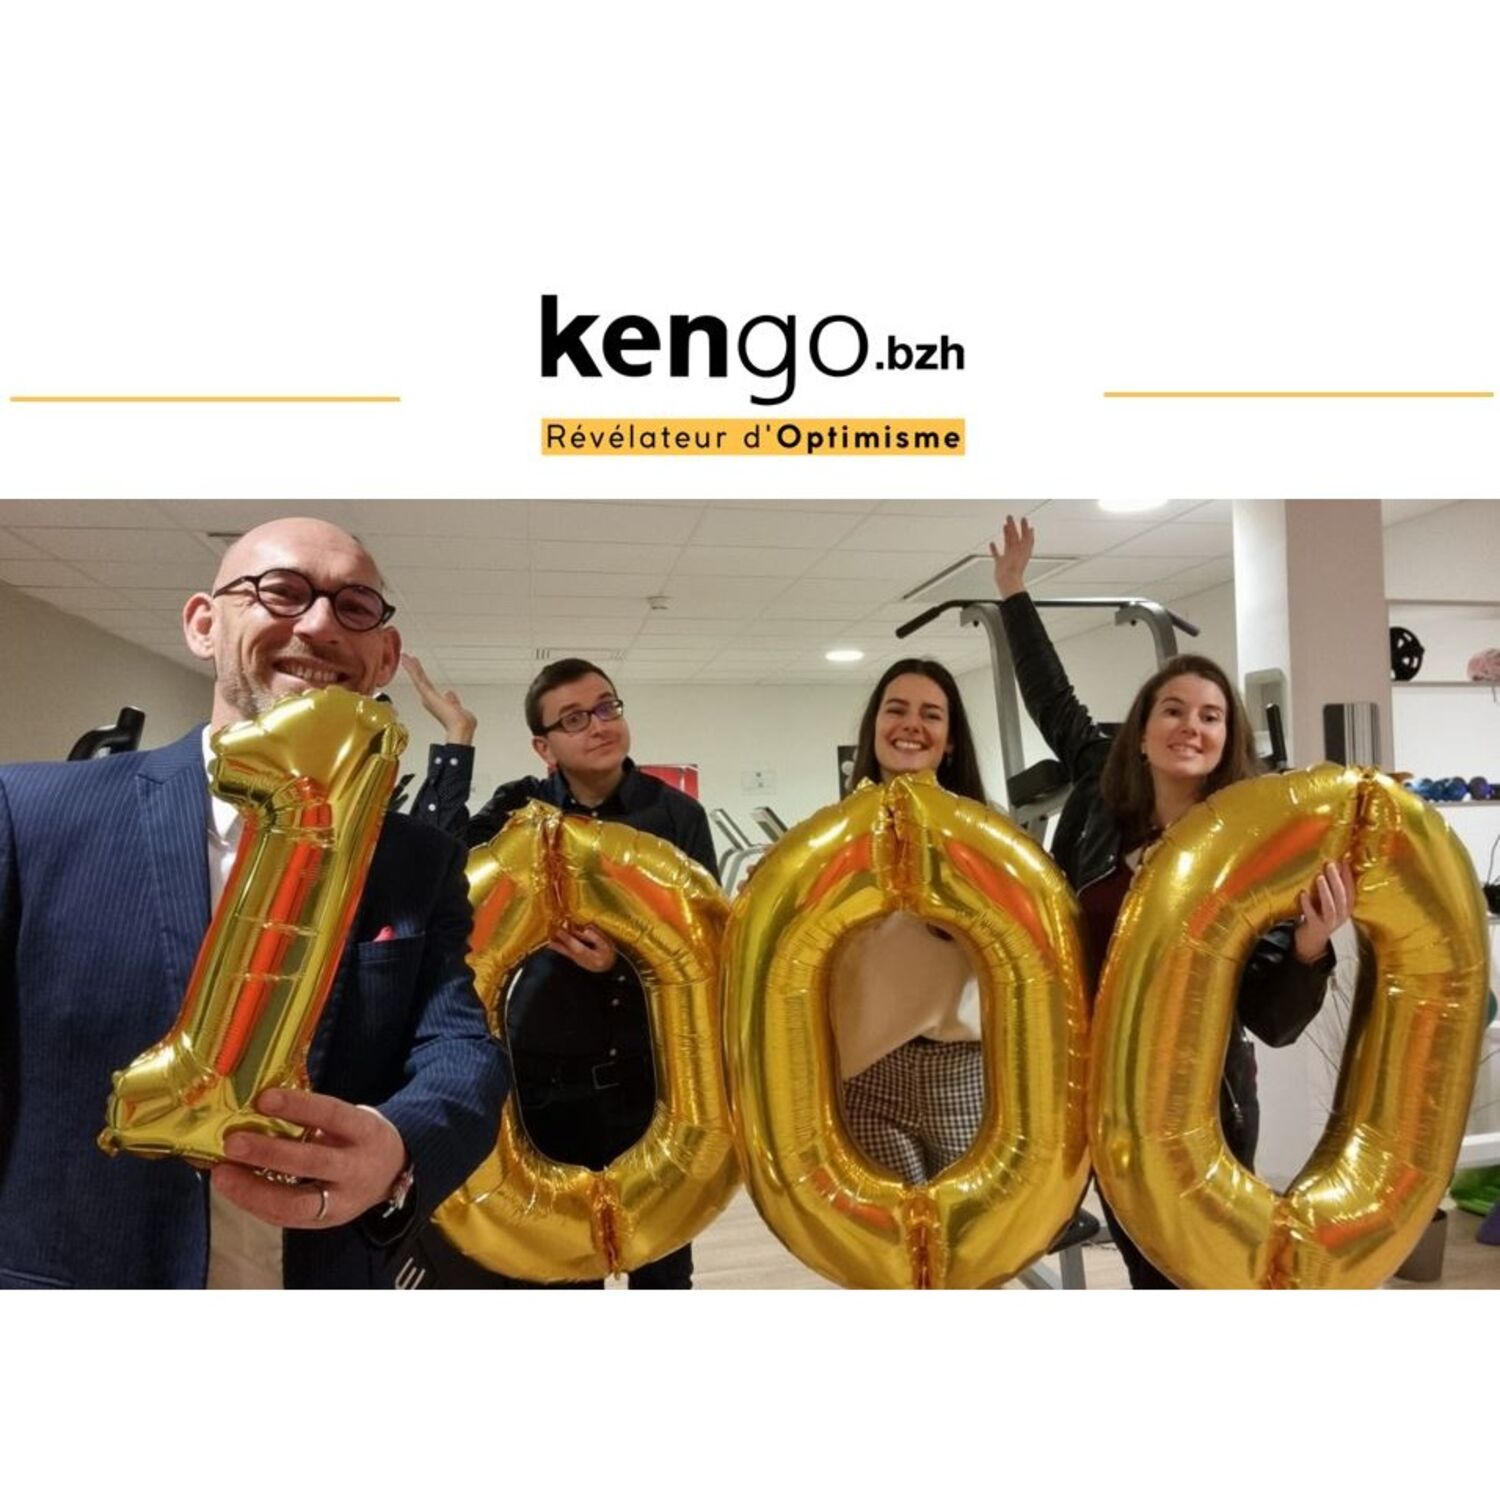 KENGO le cap des 1000 projets financés sur la plateforme